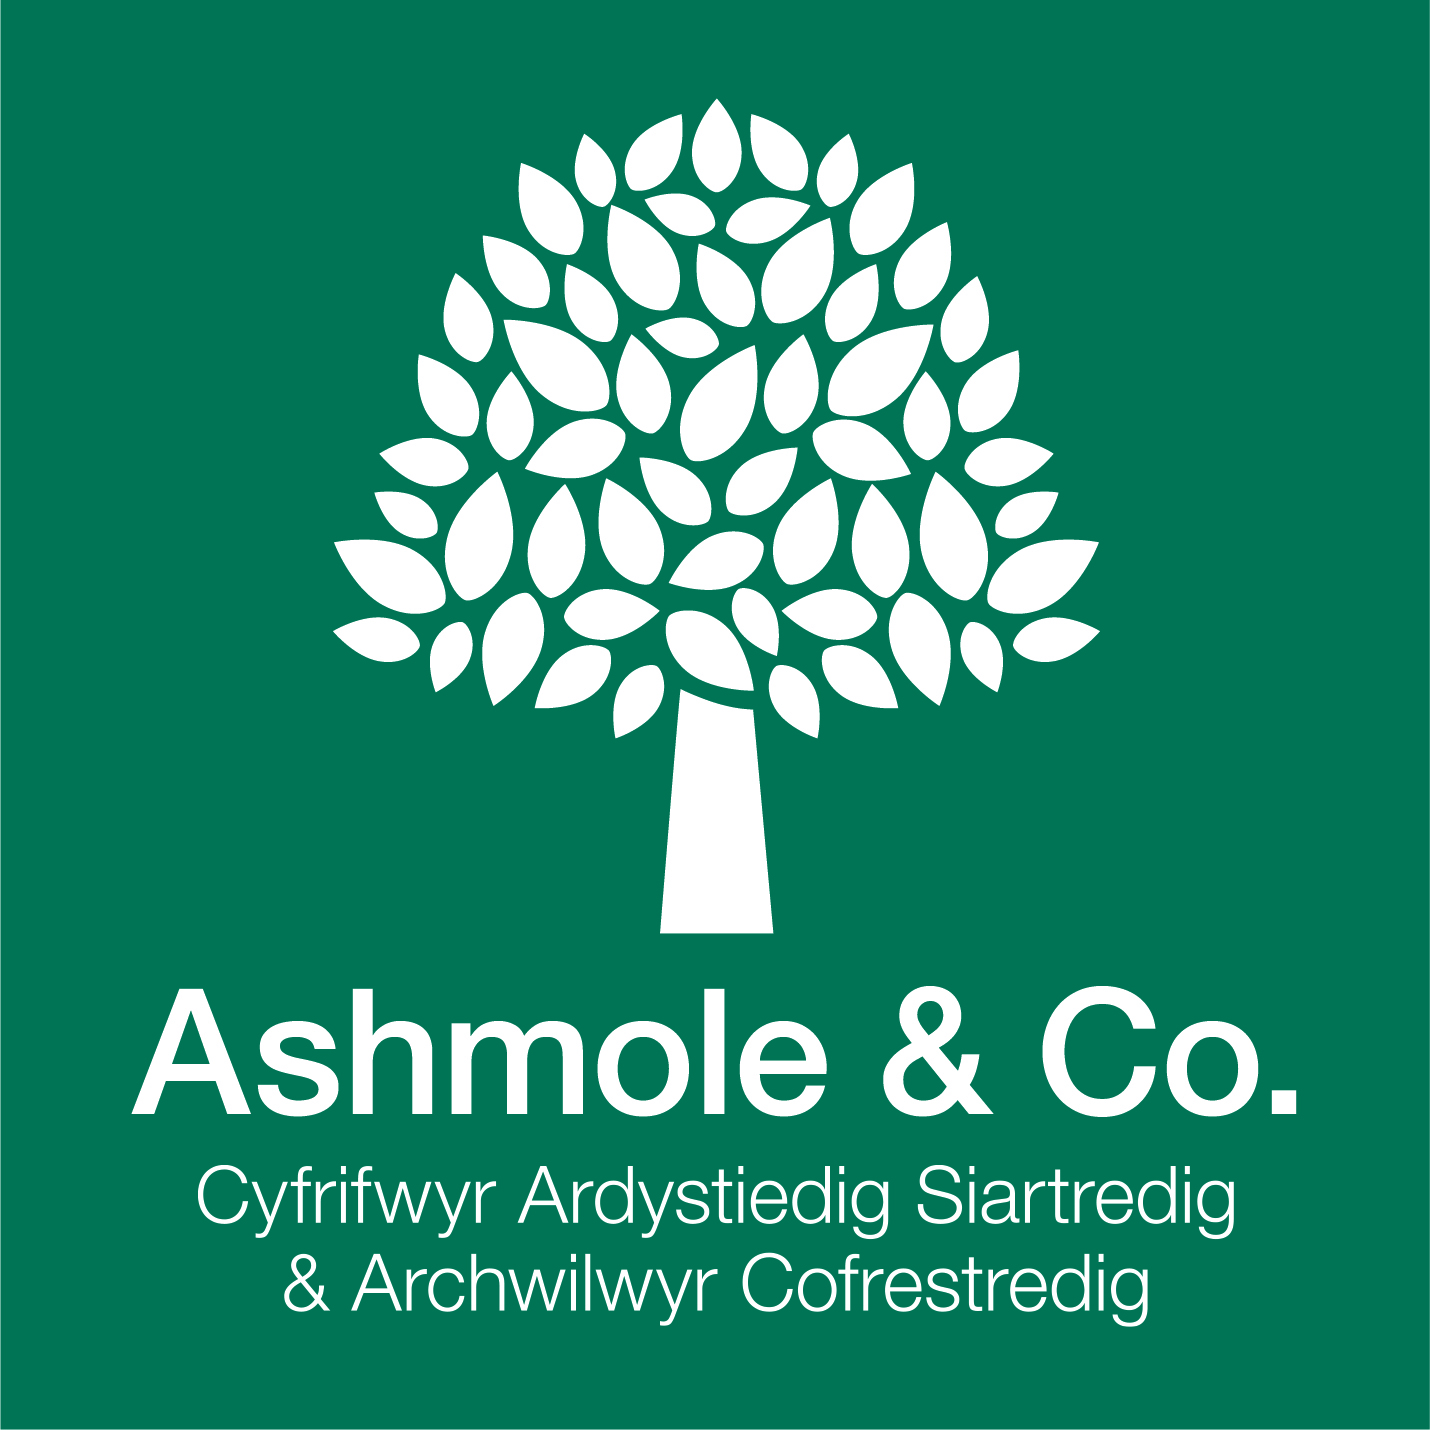 Ashmole & co logo.jpg